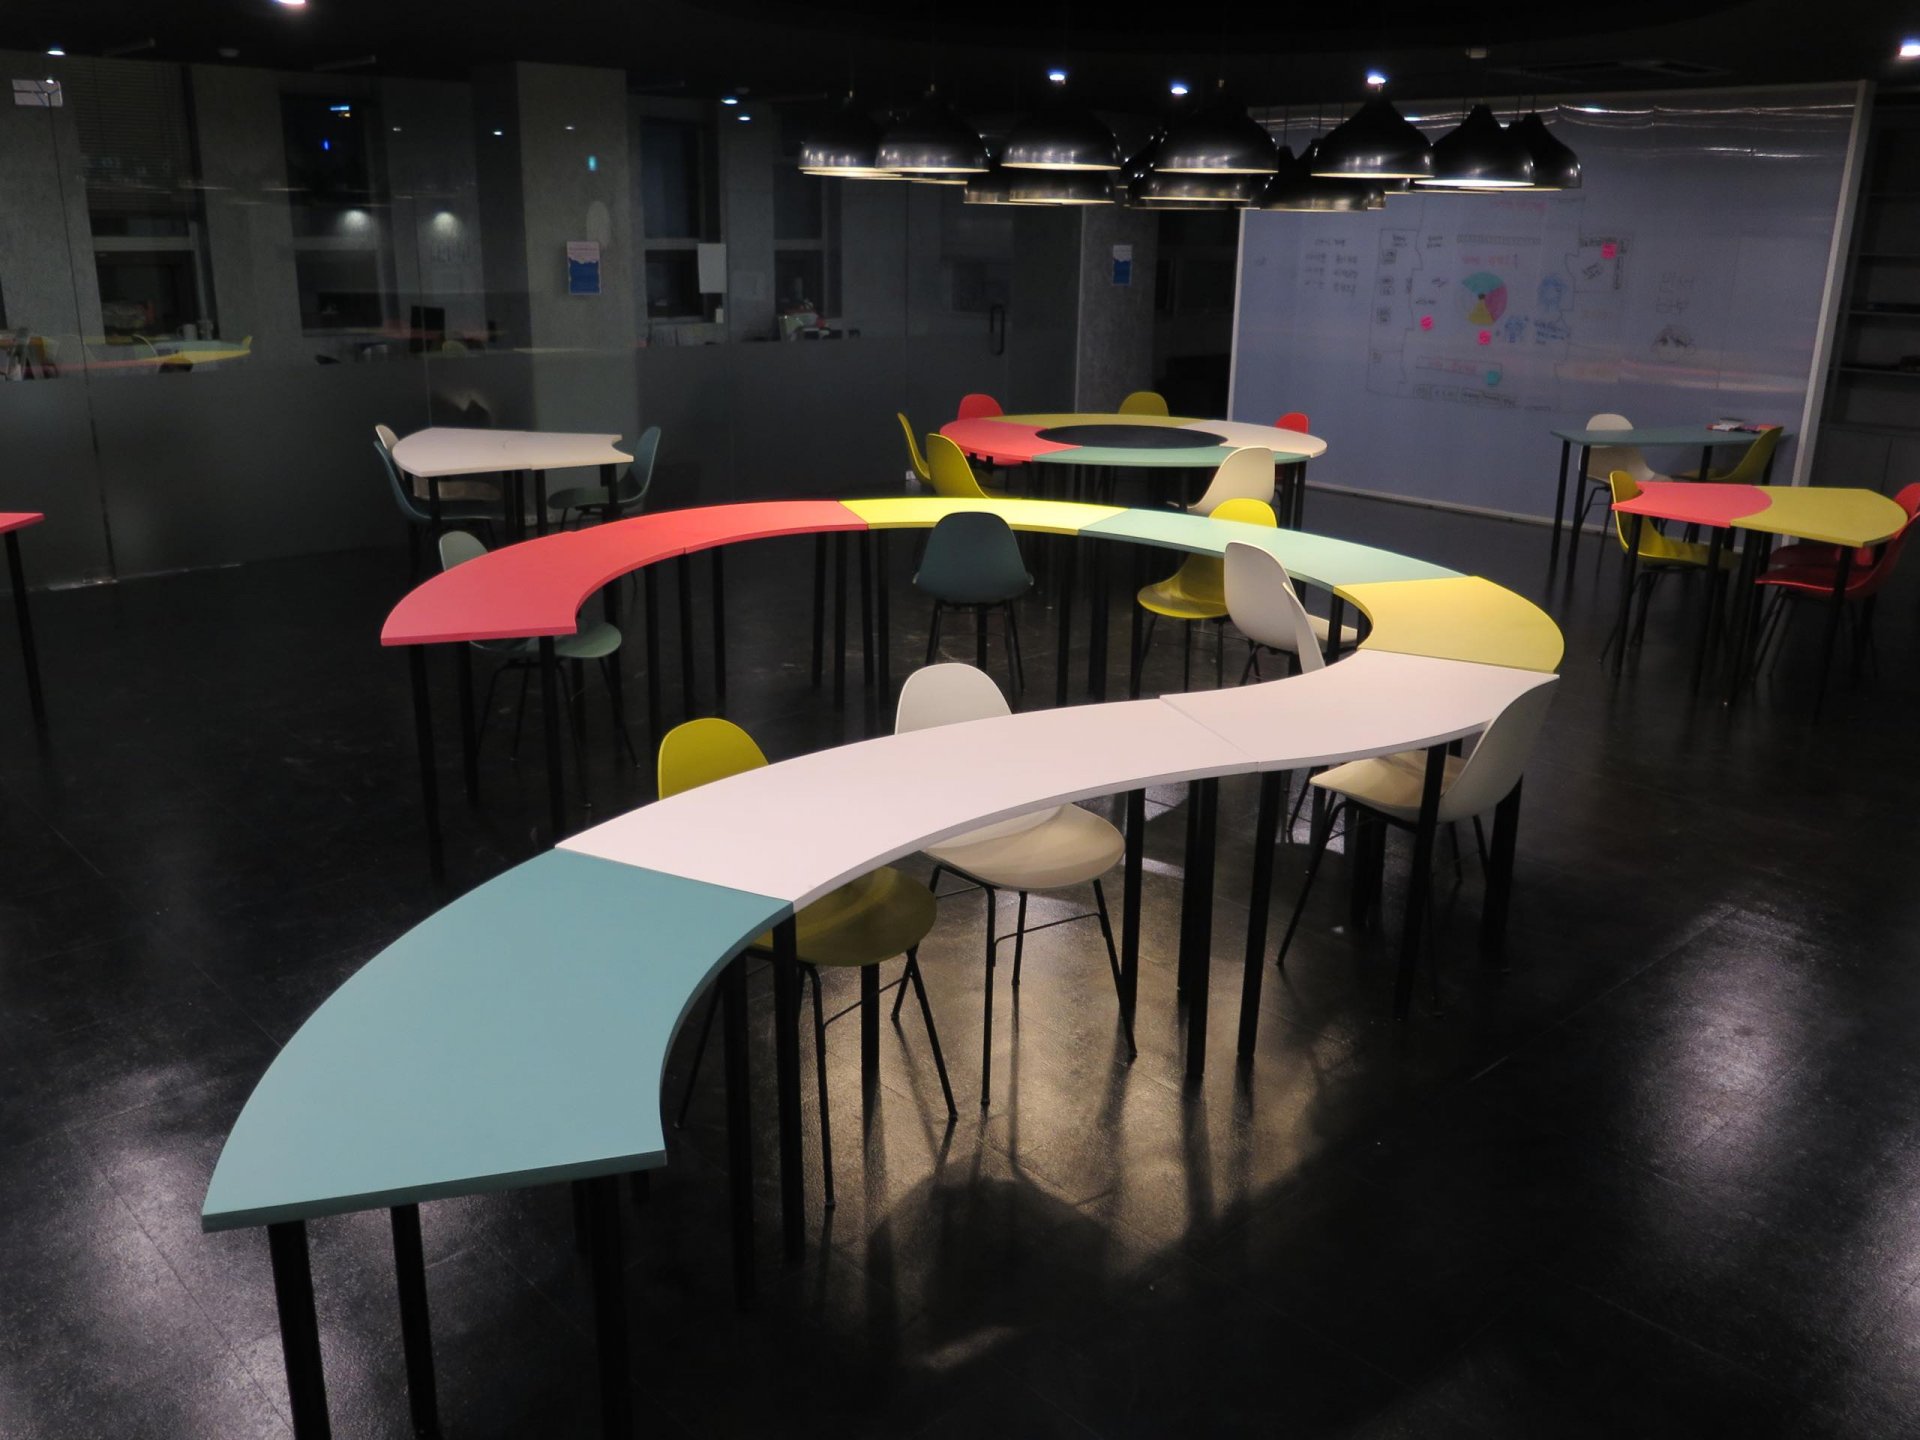 형형색색의 테이블이 놓여져있다.